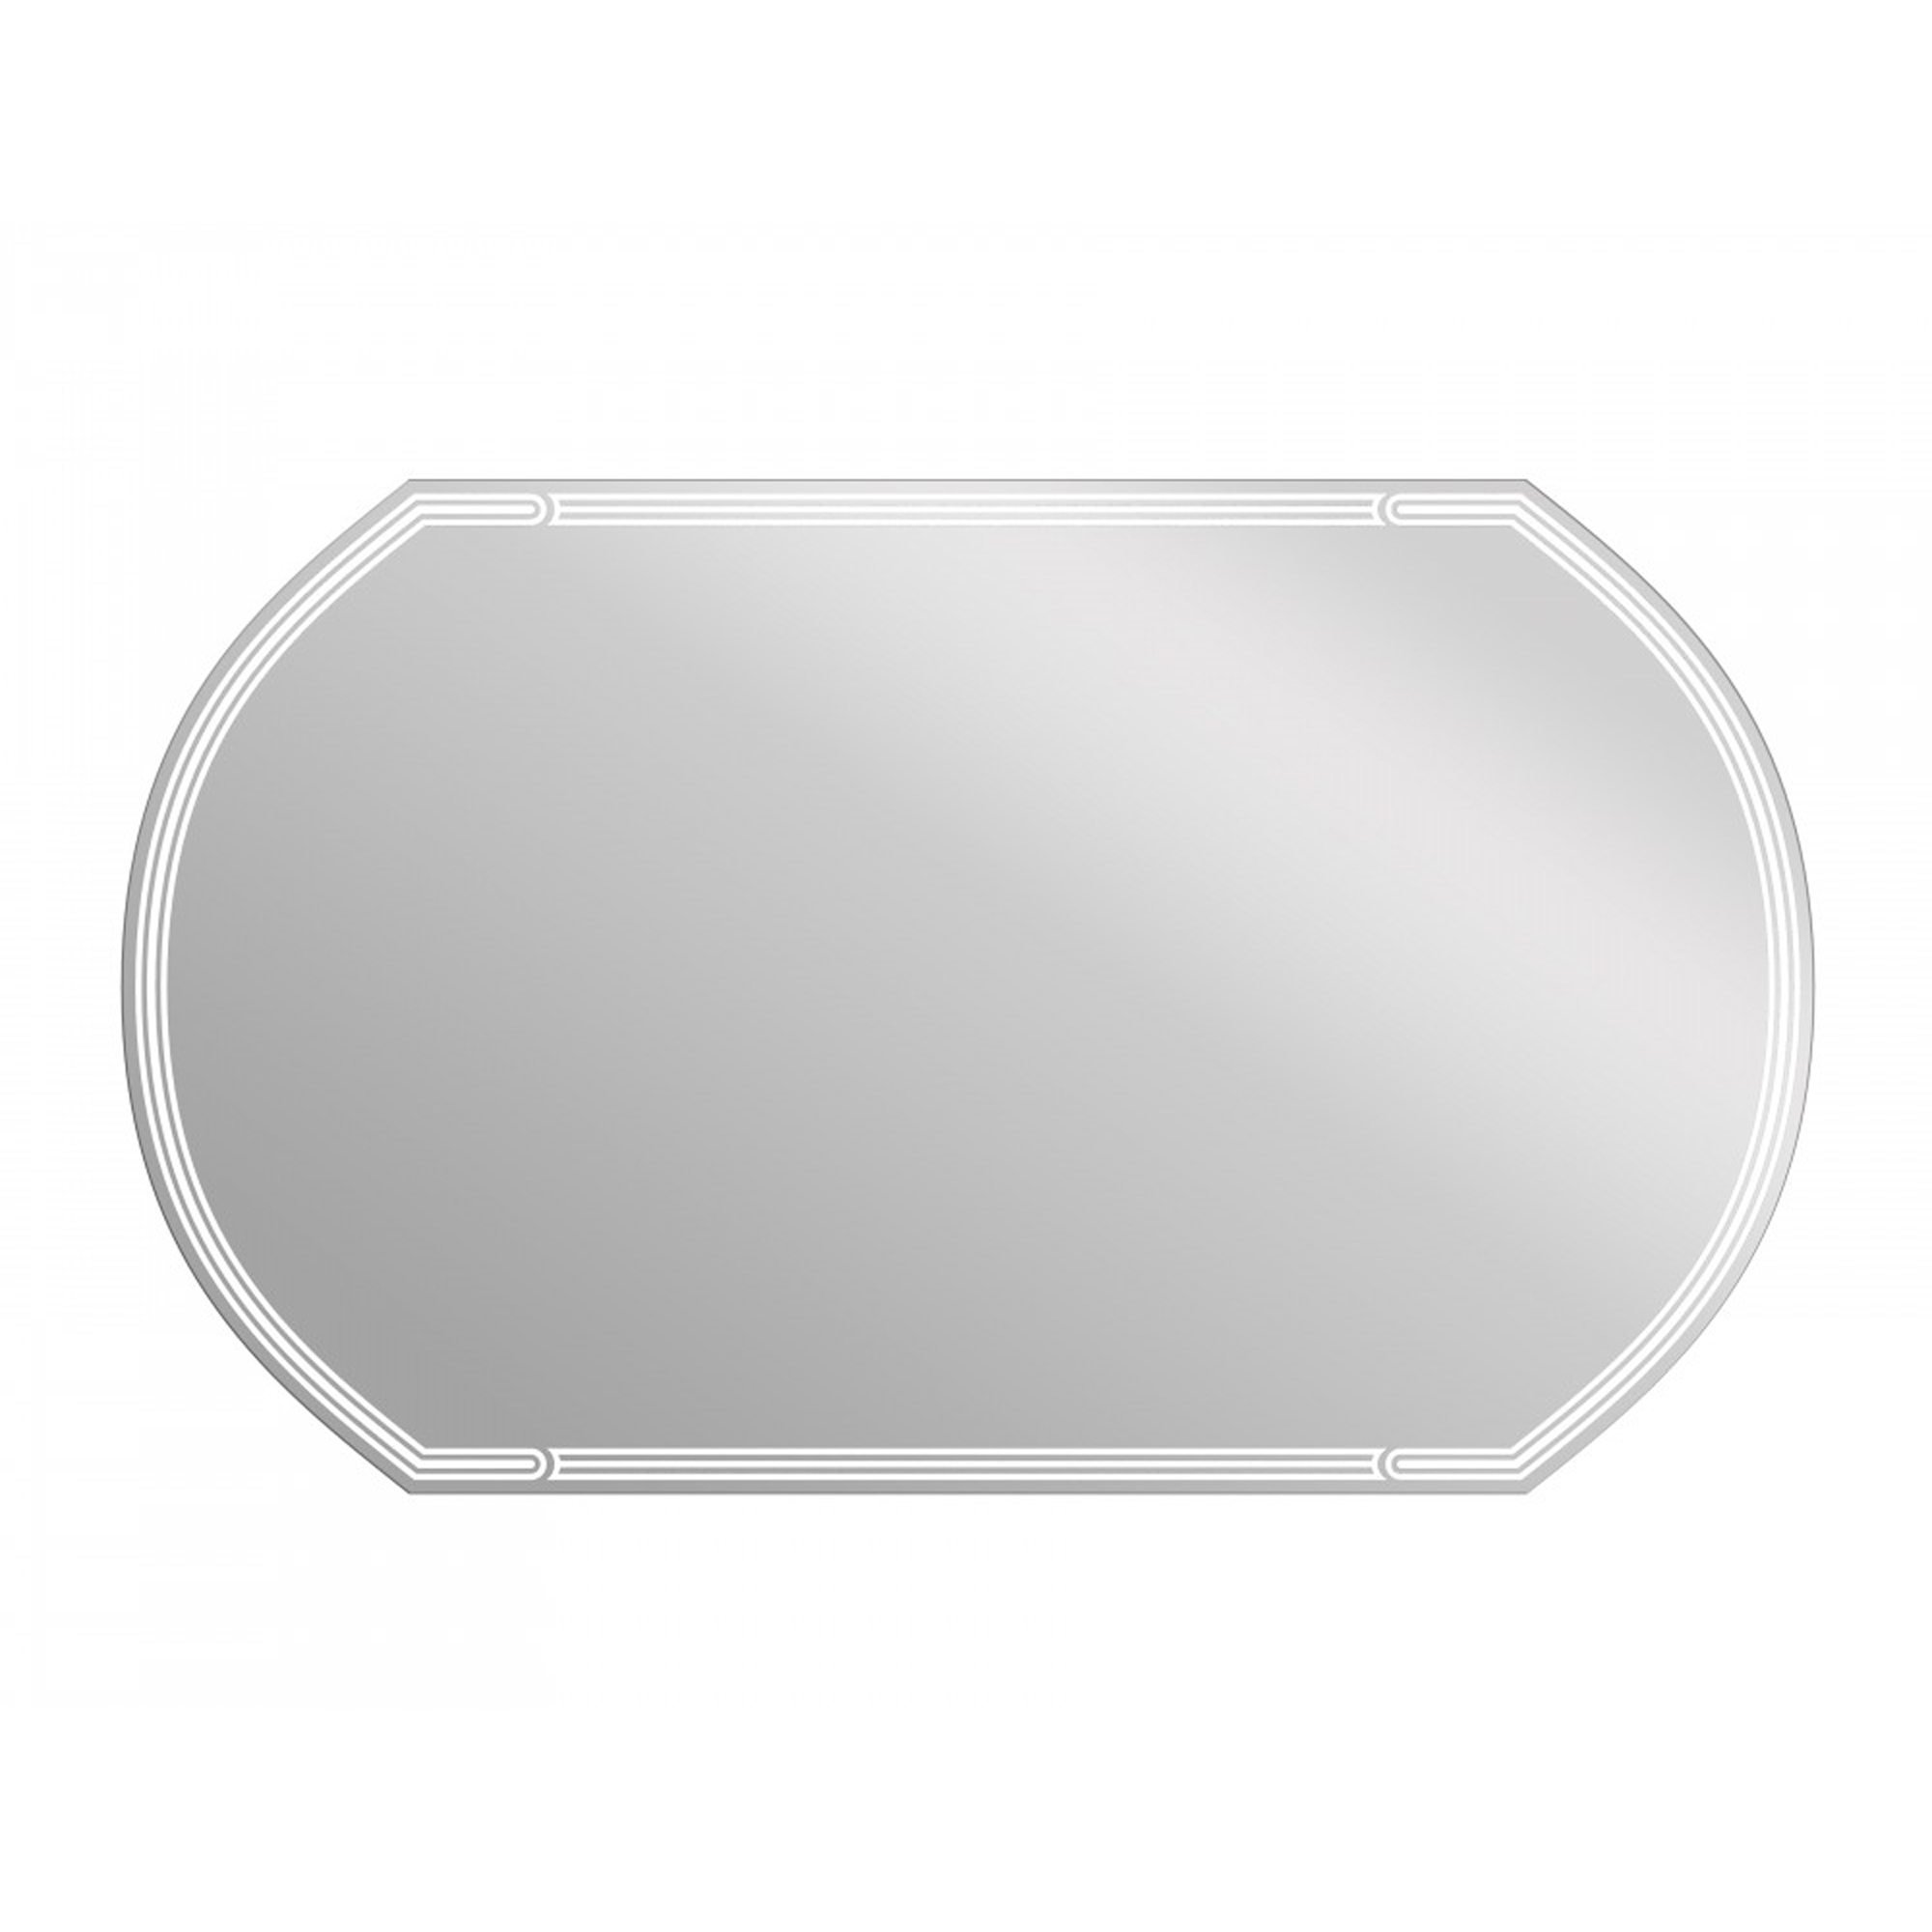 Зеркало Cersanit Led 090 design 100 с подсветкой, цвет без цвета (просто зеркальное полотно) KN-LU-LED090*100-d-Os - фото 1